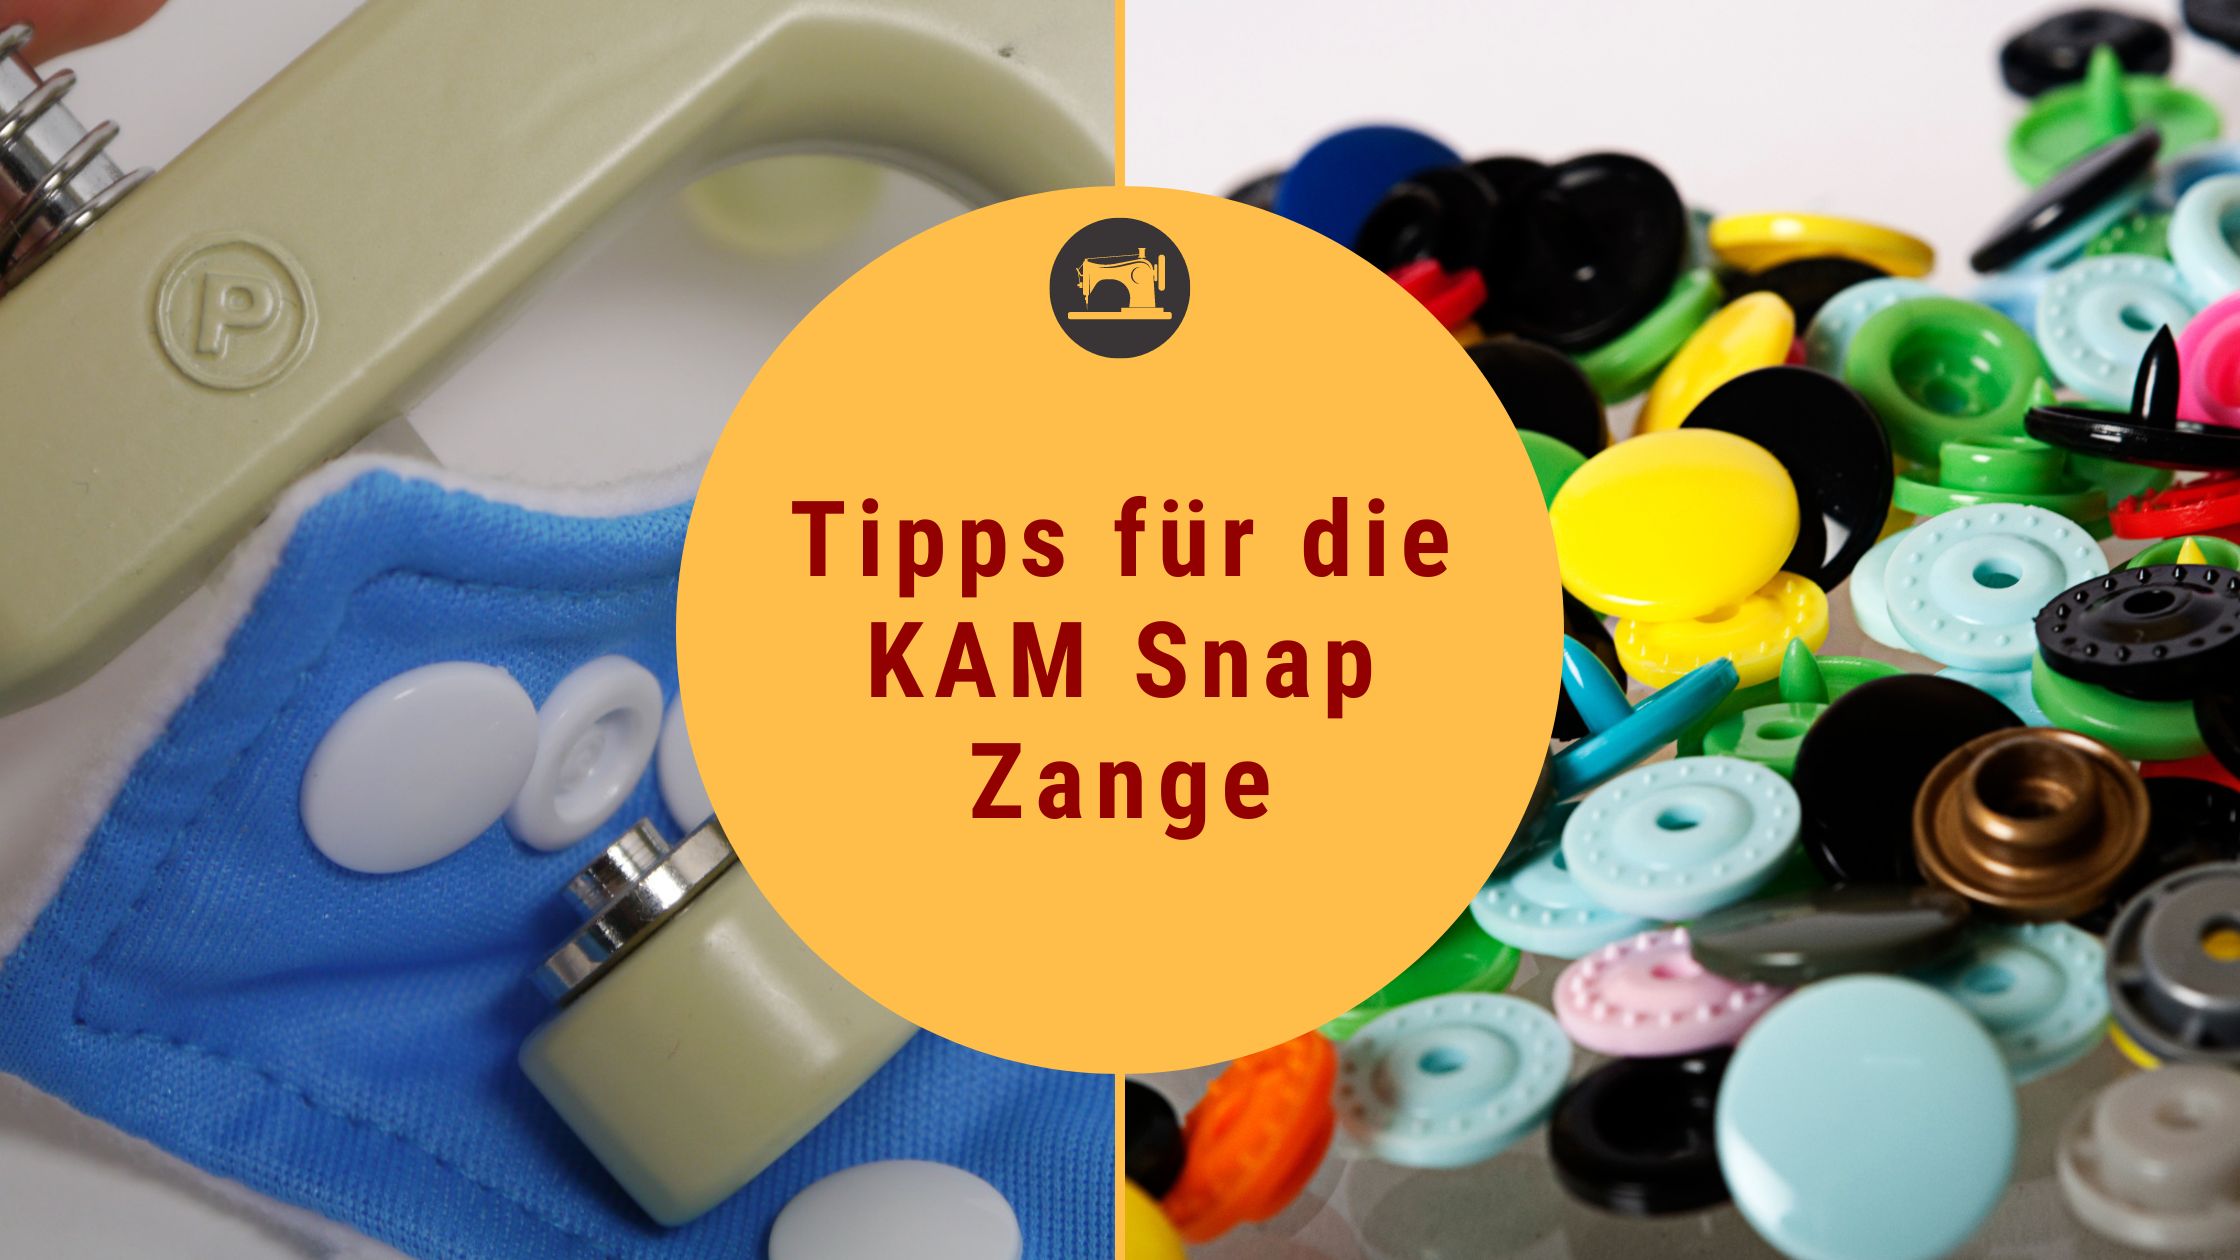 Zusammenbau der Snap Plier für KAM Snaps (Update 28.06.2016)